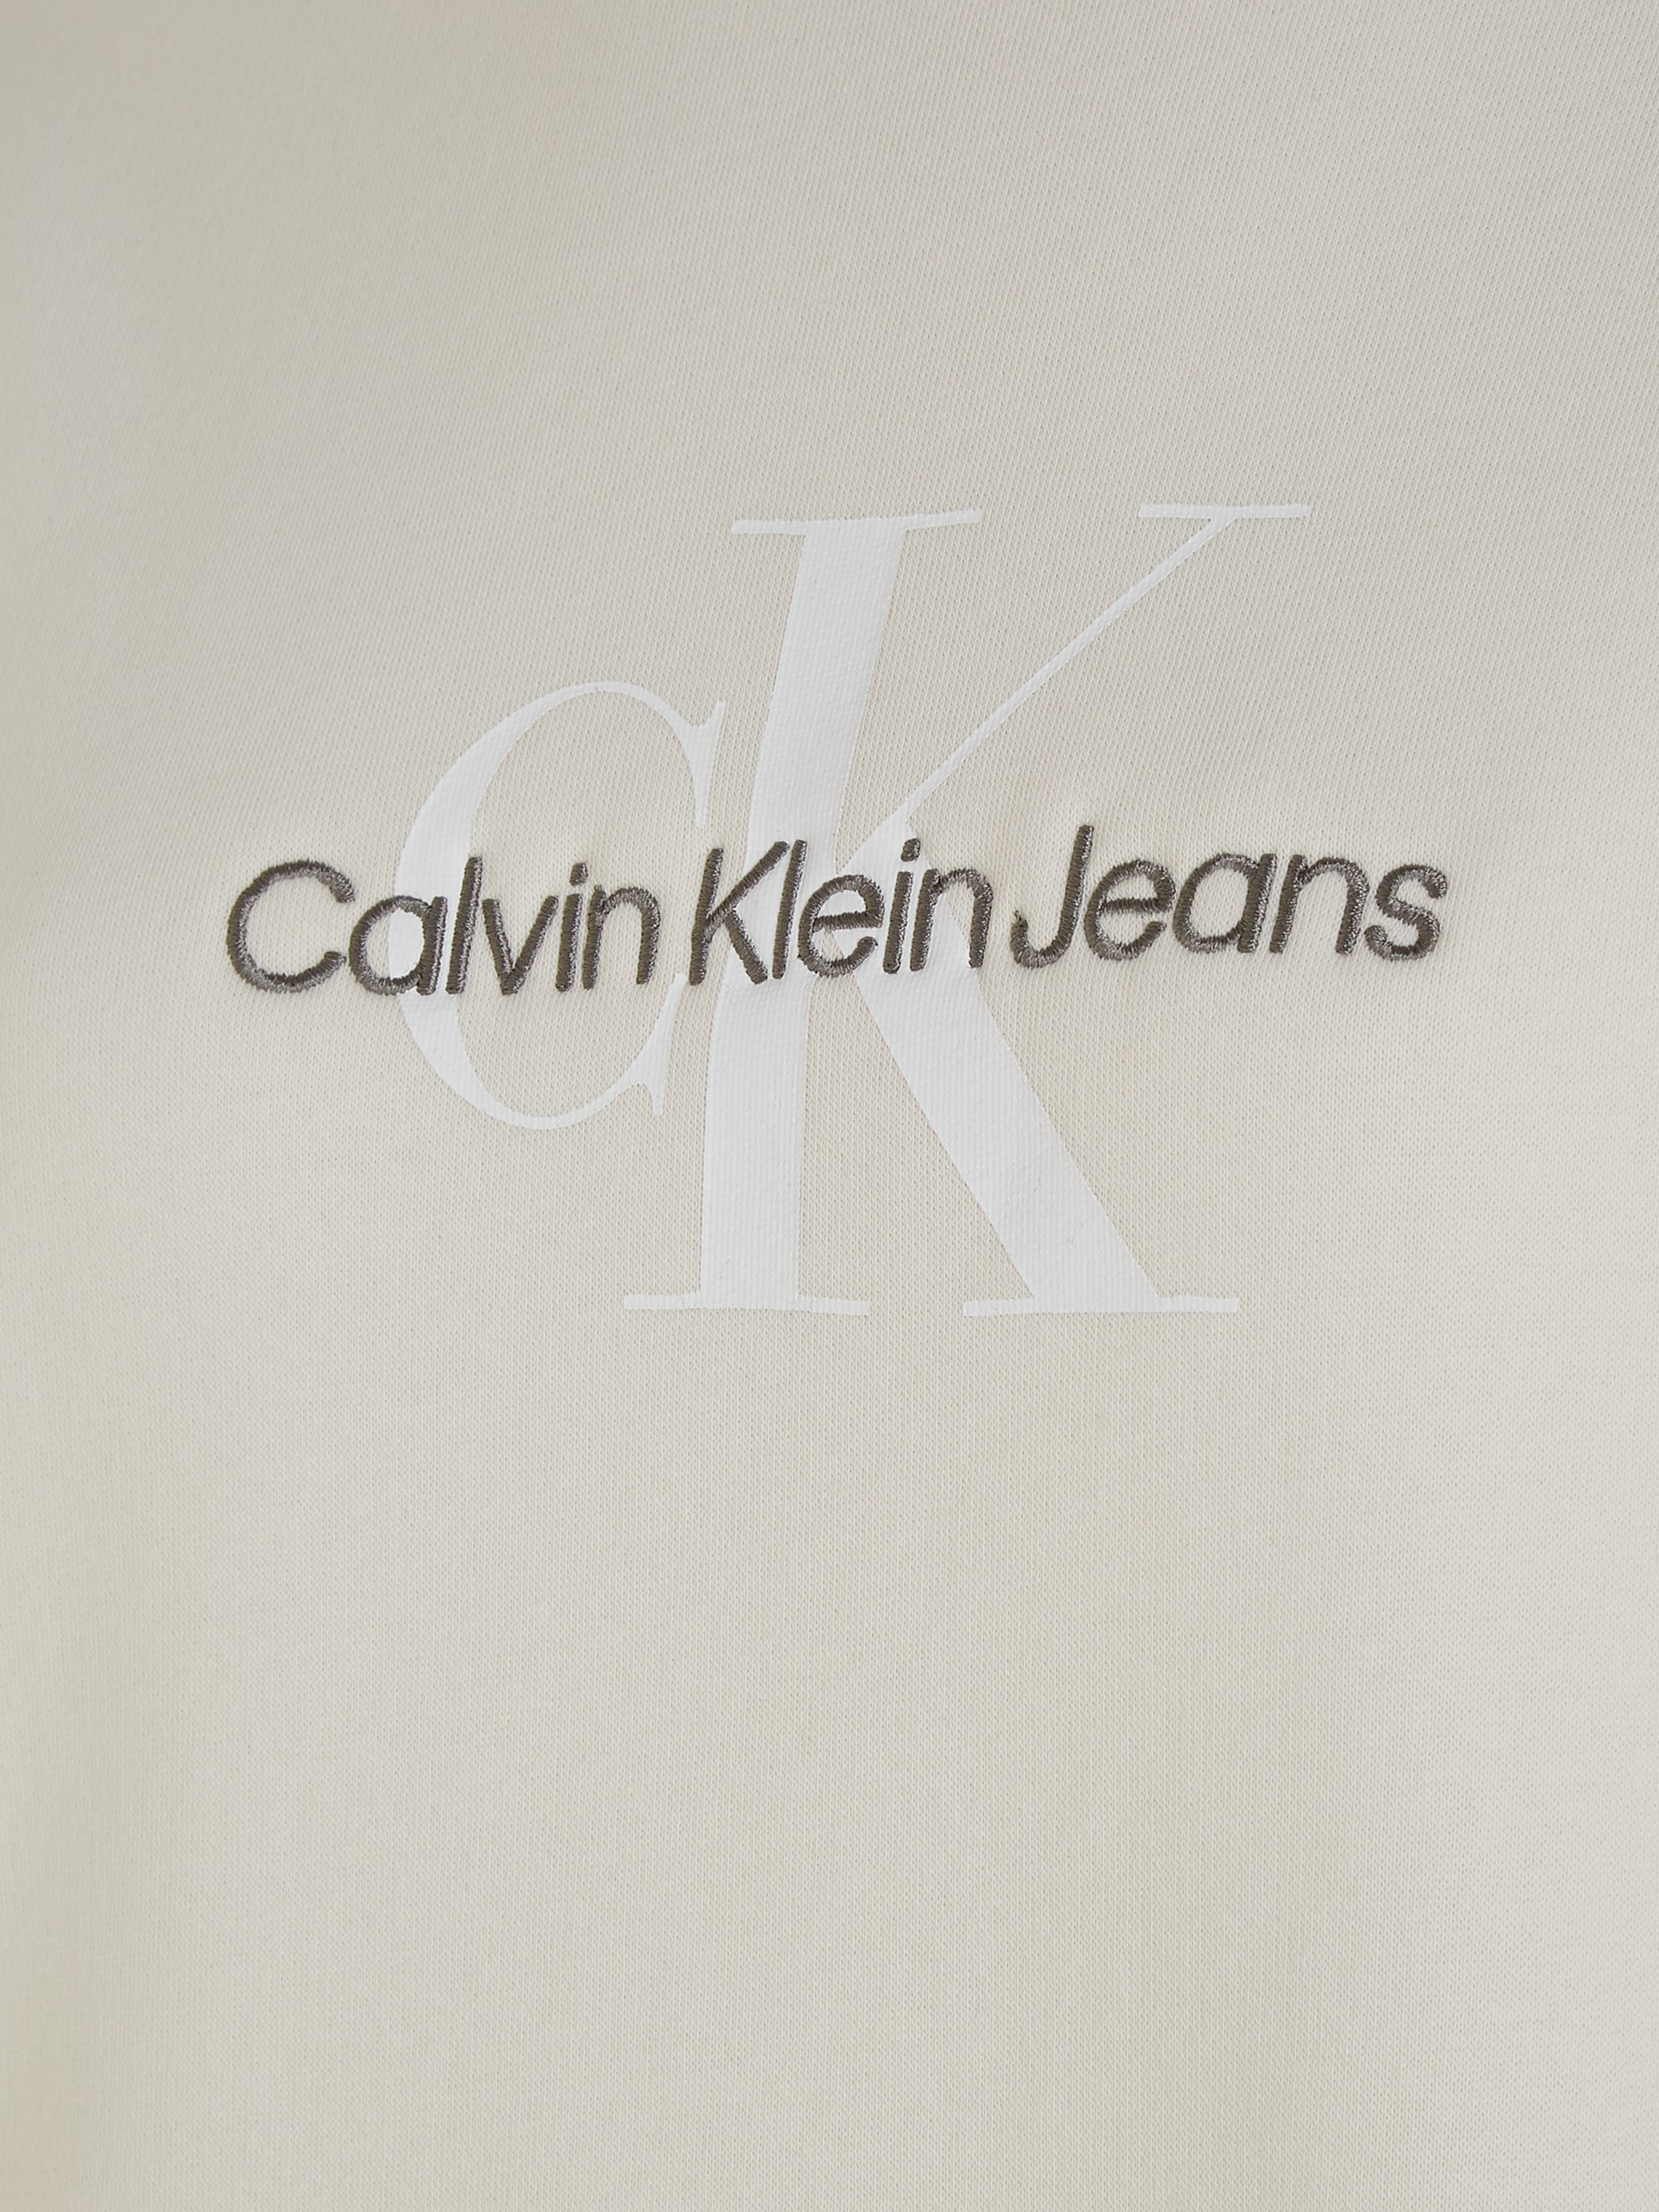 | ROLL »MONOLOGO NECK Jeans Calvin kaufen Klein BAUR Sweatkleid DRESS«